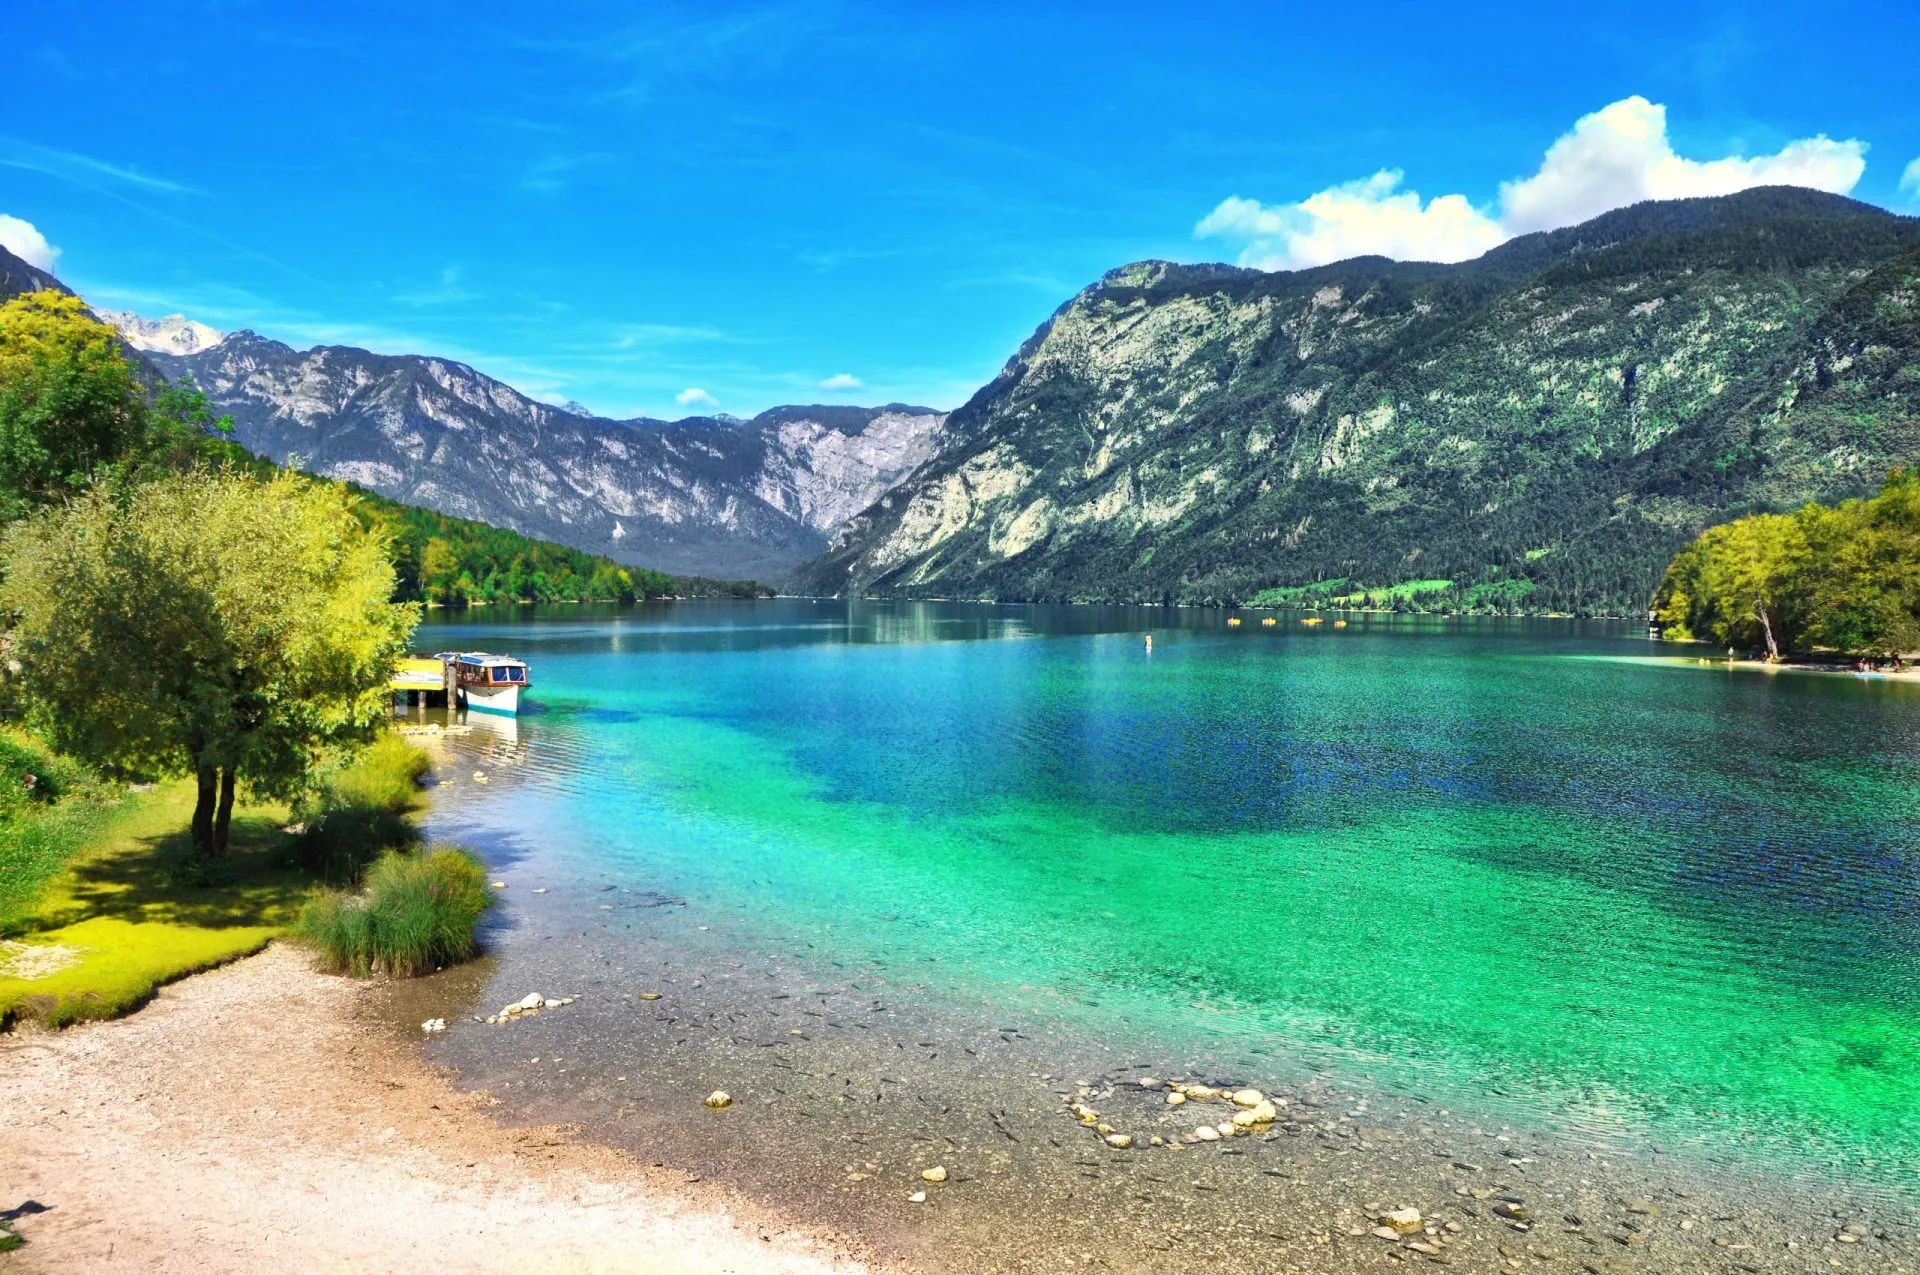 mooi sloveens landschap bohinj meermet turkoois watertriglav nationaal park julian alpen sloveniaeuropa stockpack adobe voorraad geschaald